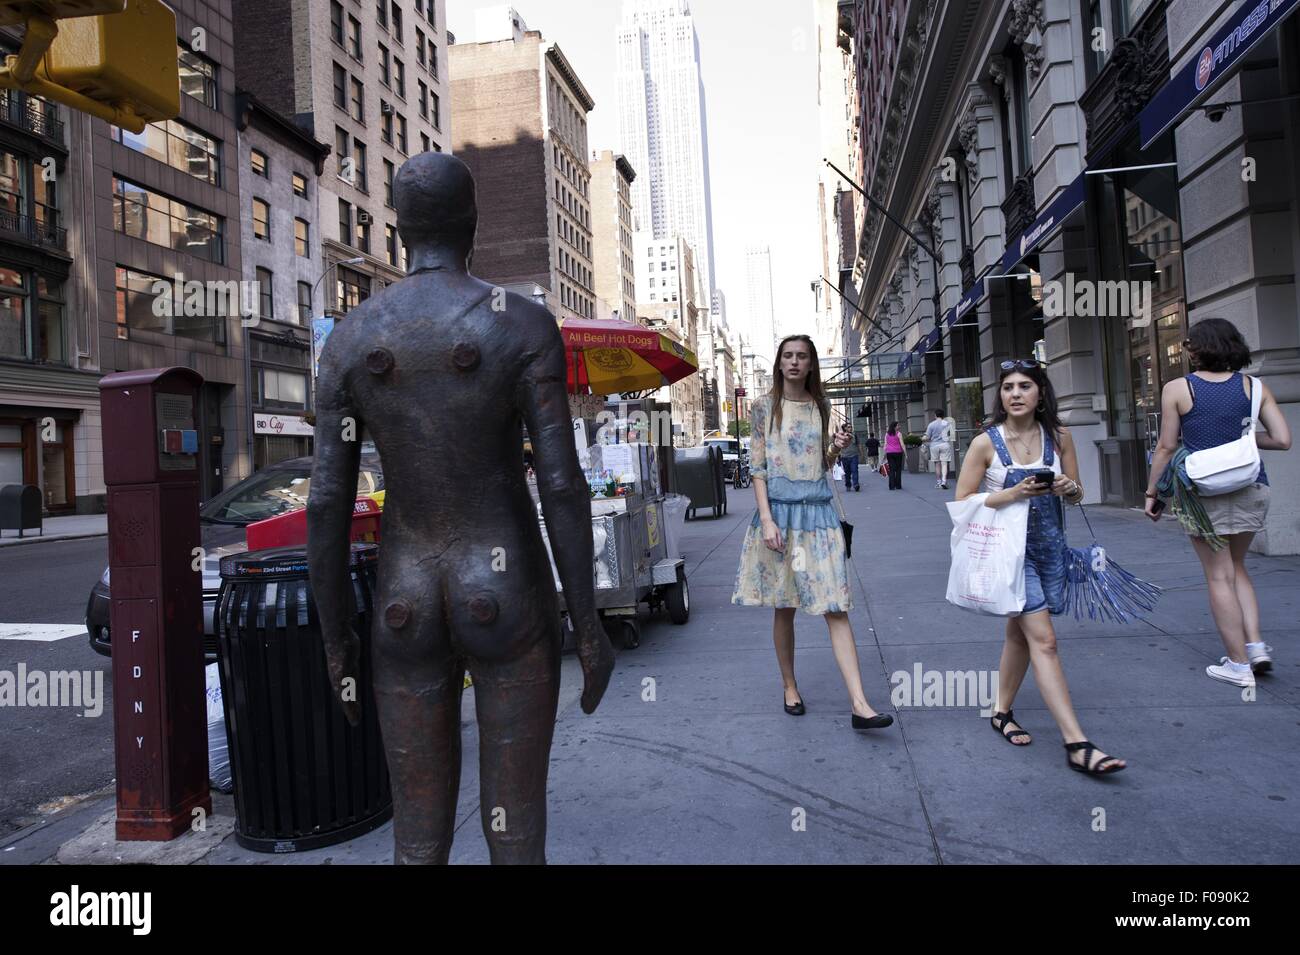 Zwei Frauen, Blick auf die Statue beim gehen auf der Straße in New York, USA Stockfoto